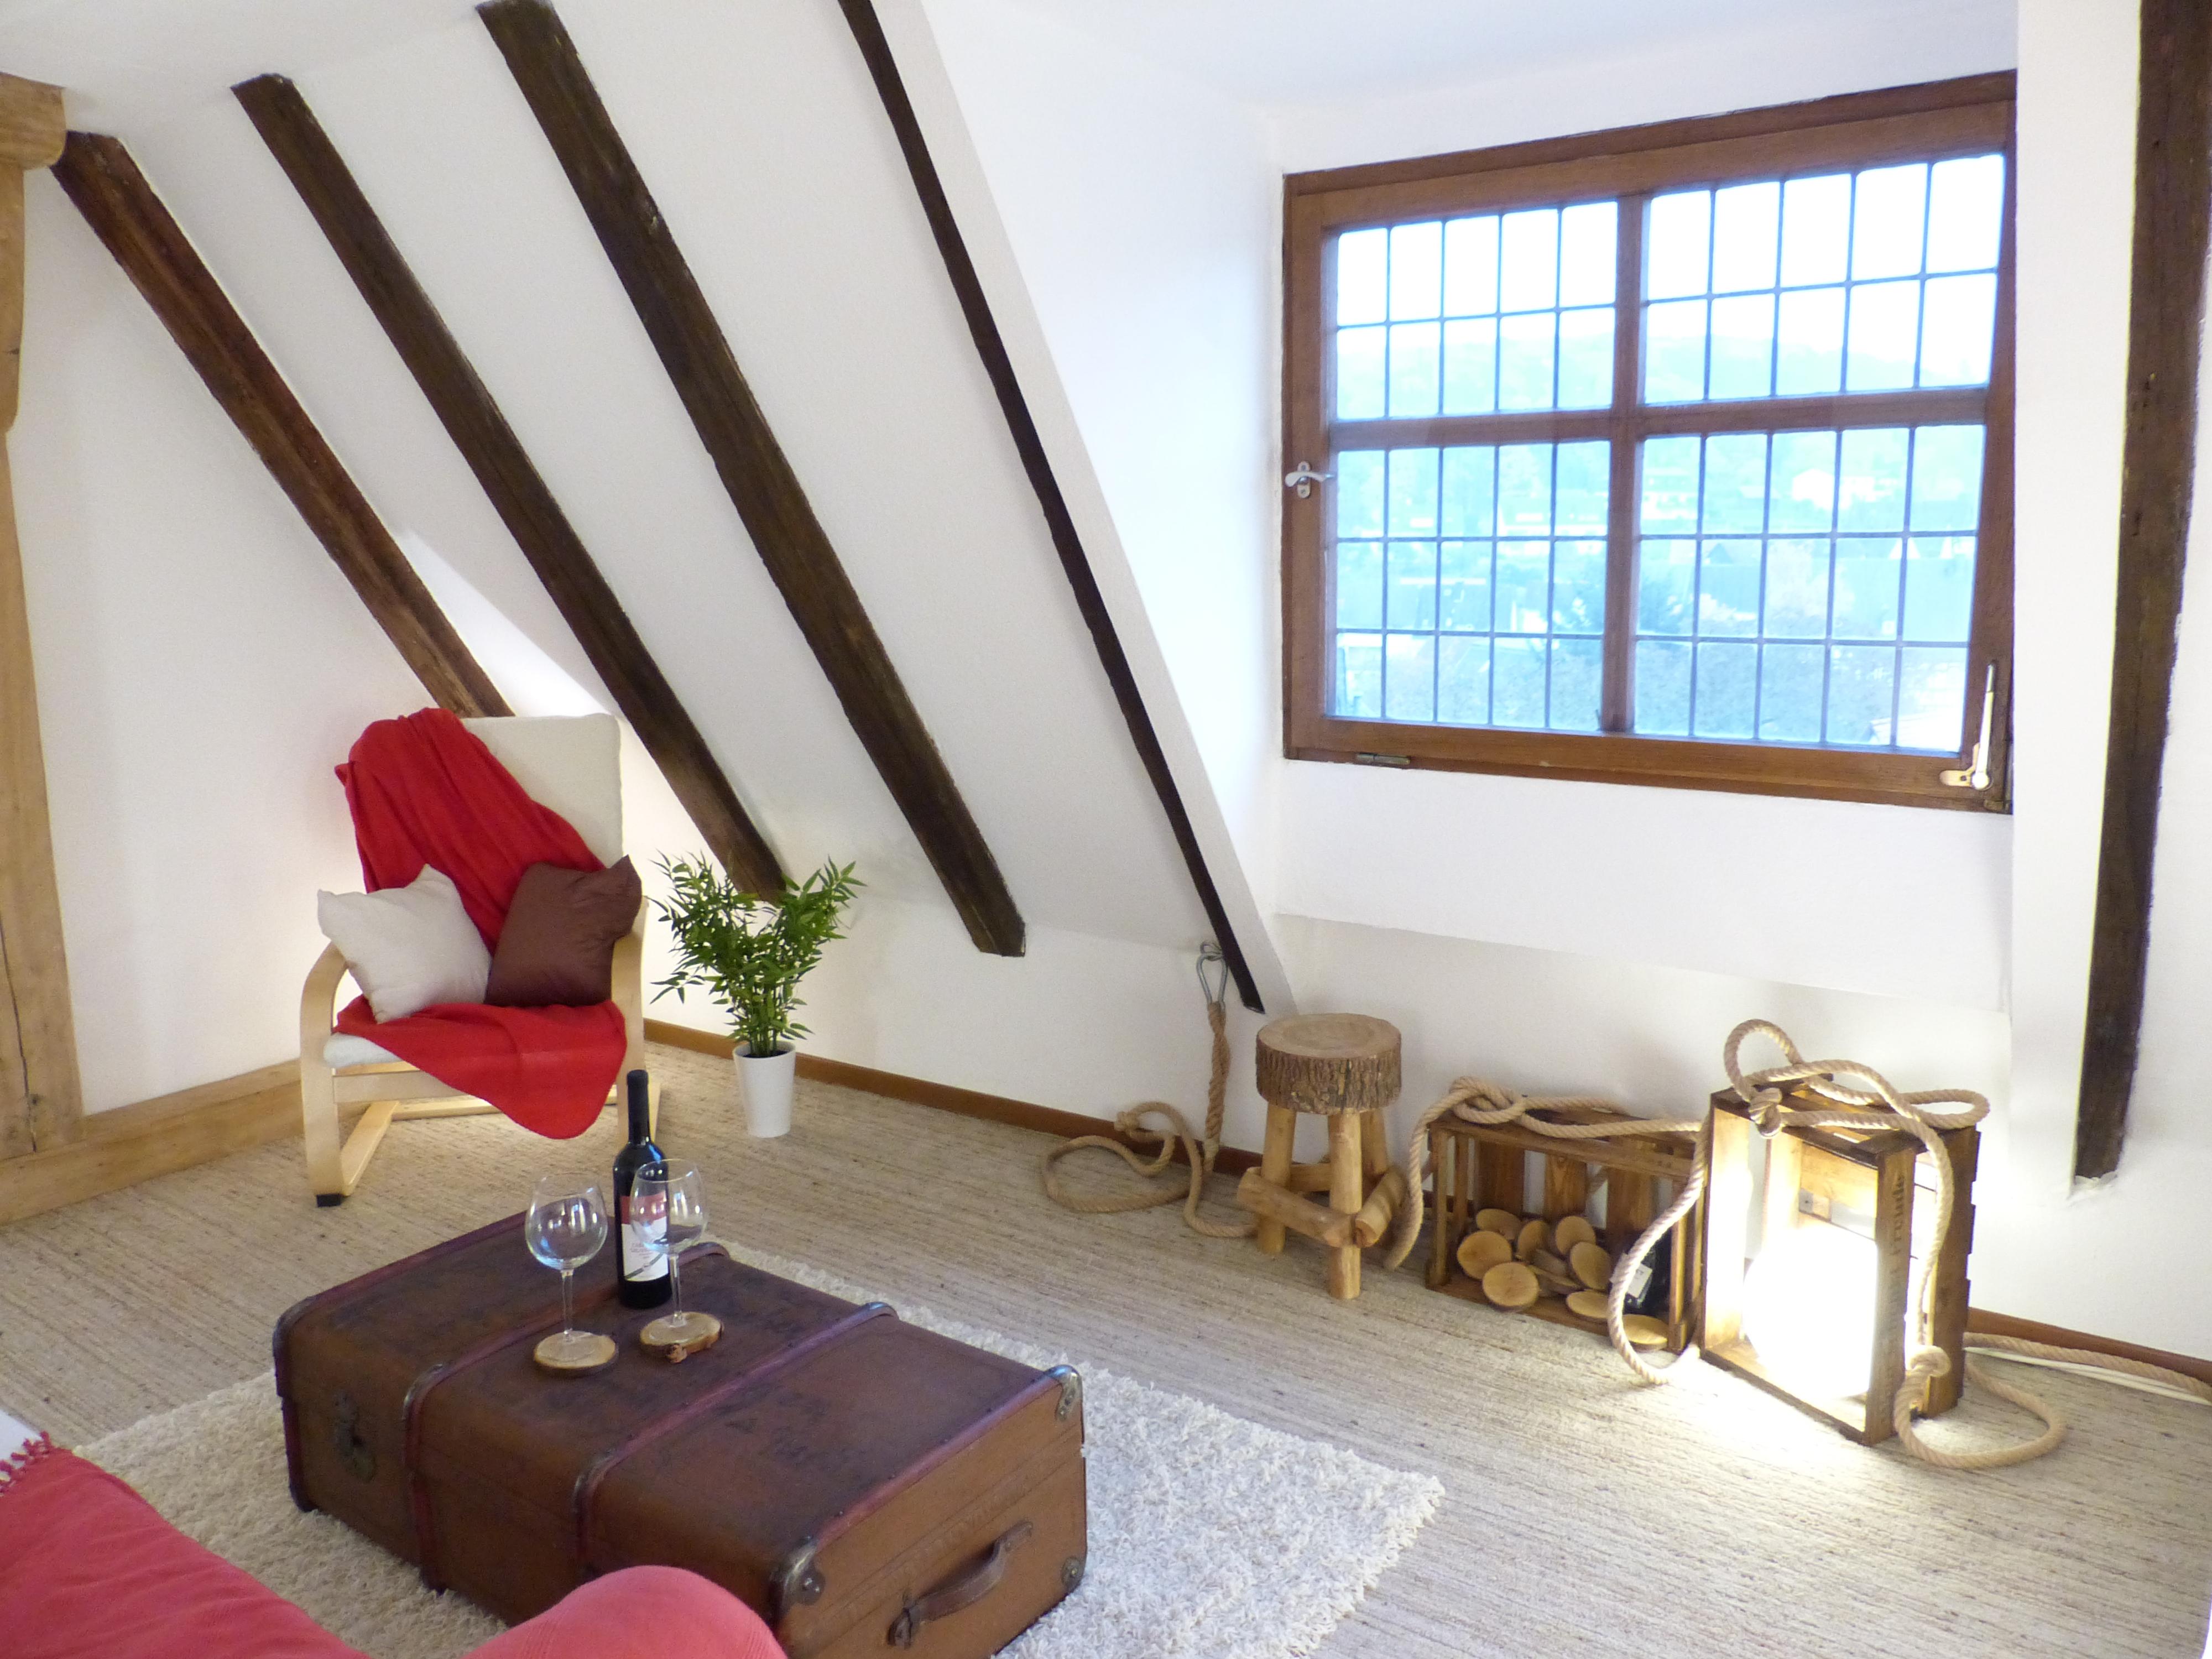 Wohnzimmer in Burg #einrichtungsberatung #zimmergestaltung ©Immobilien Podium